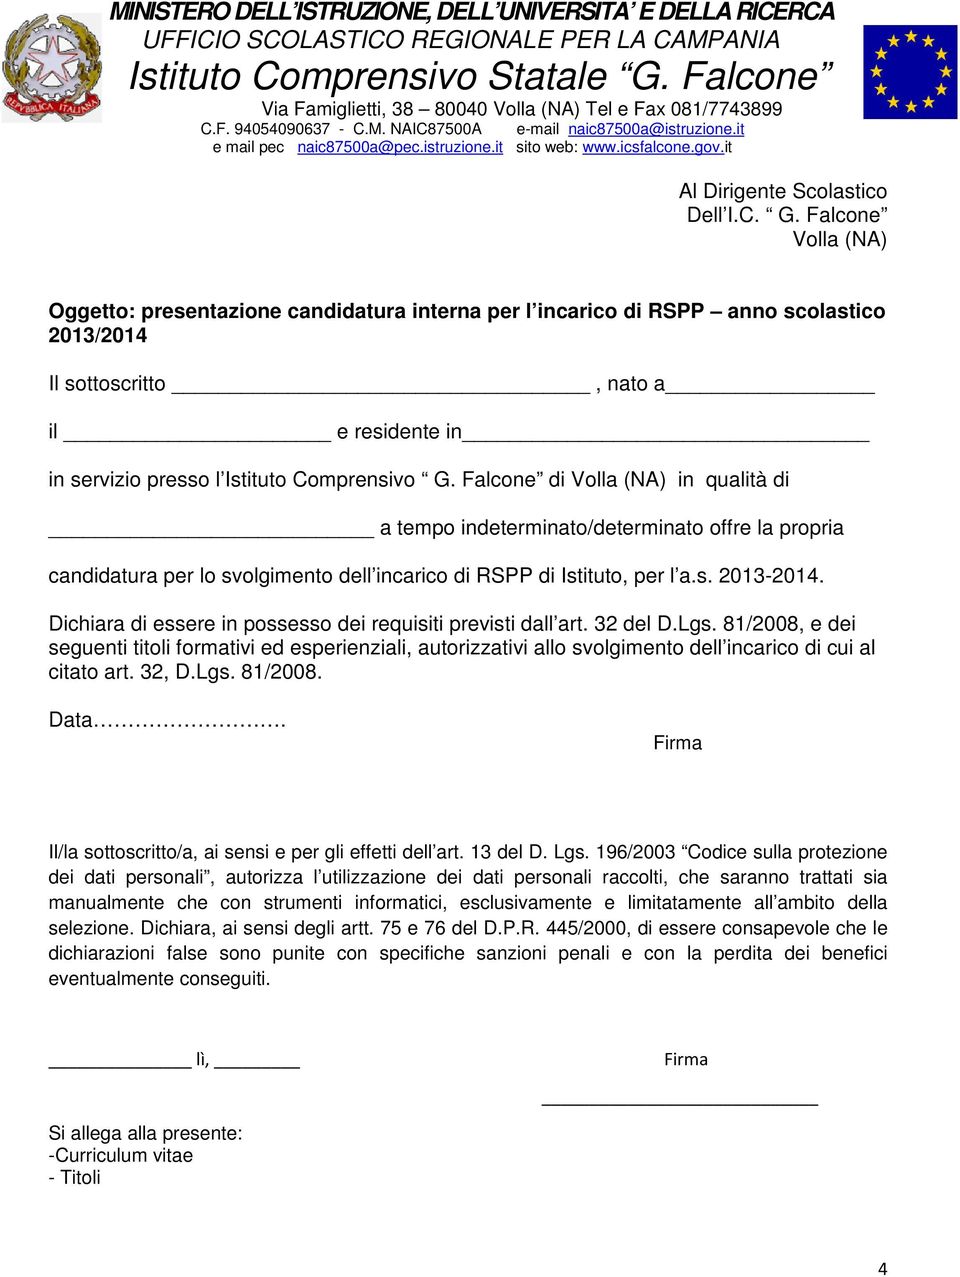 Falcone di Volla (NA) in qualità di a tempo indeterminato/determinato offre la propria candidatura per lo svolgimento dell incarico di RSPP di Istituto, per l a.s. 2013-2014.